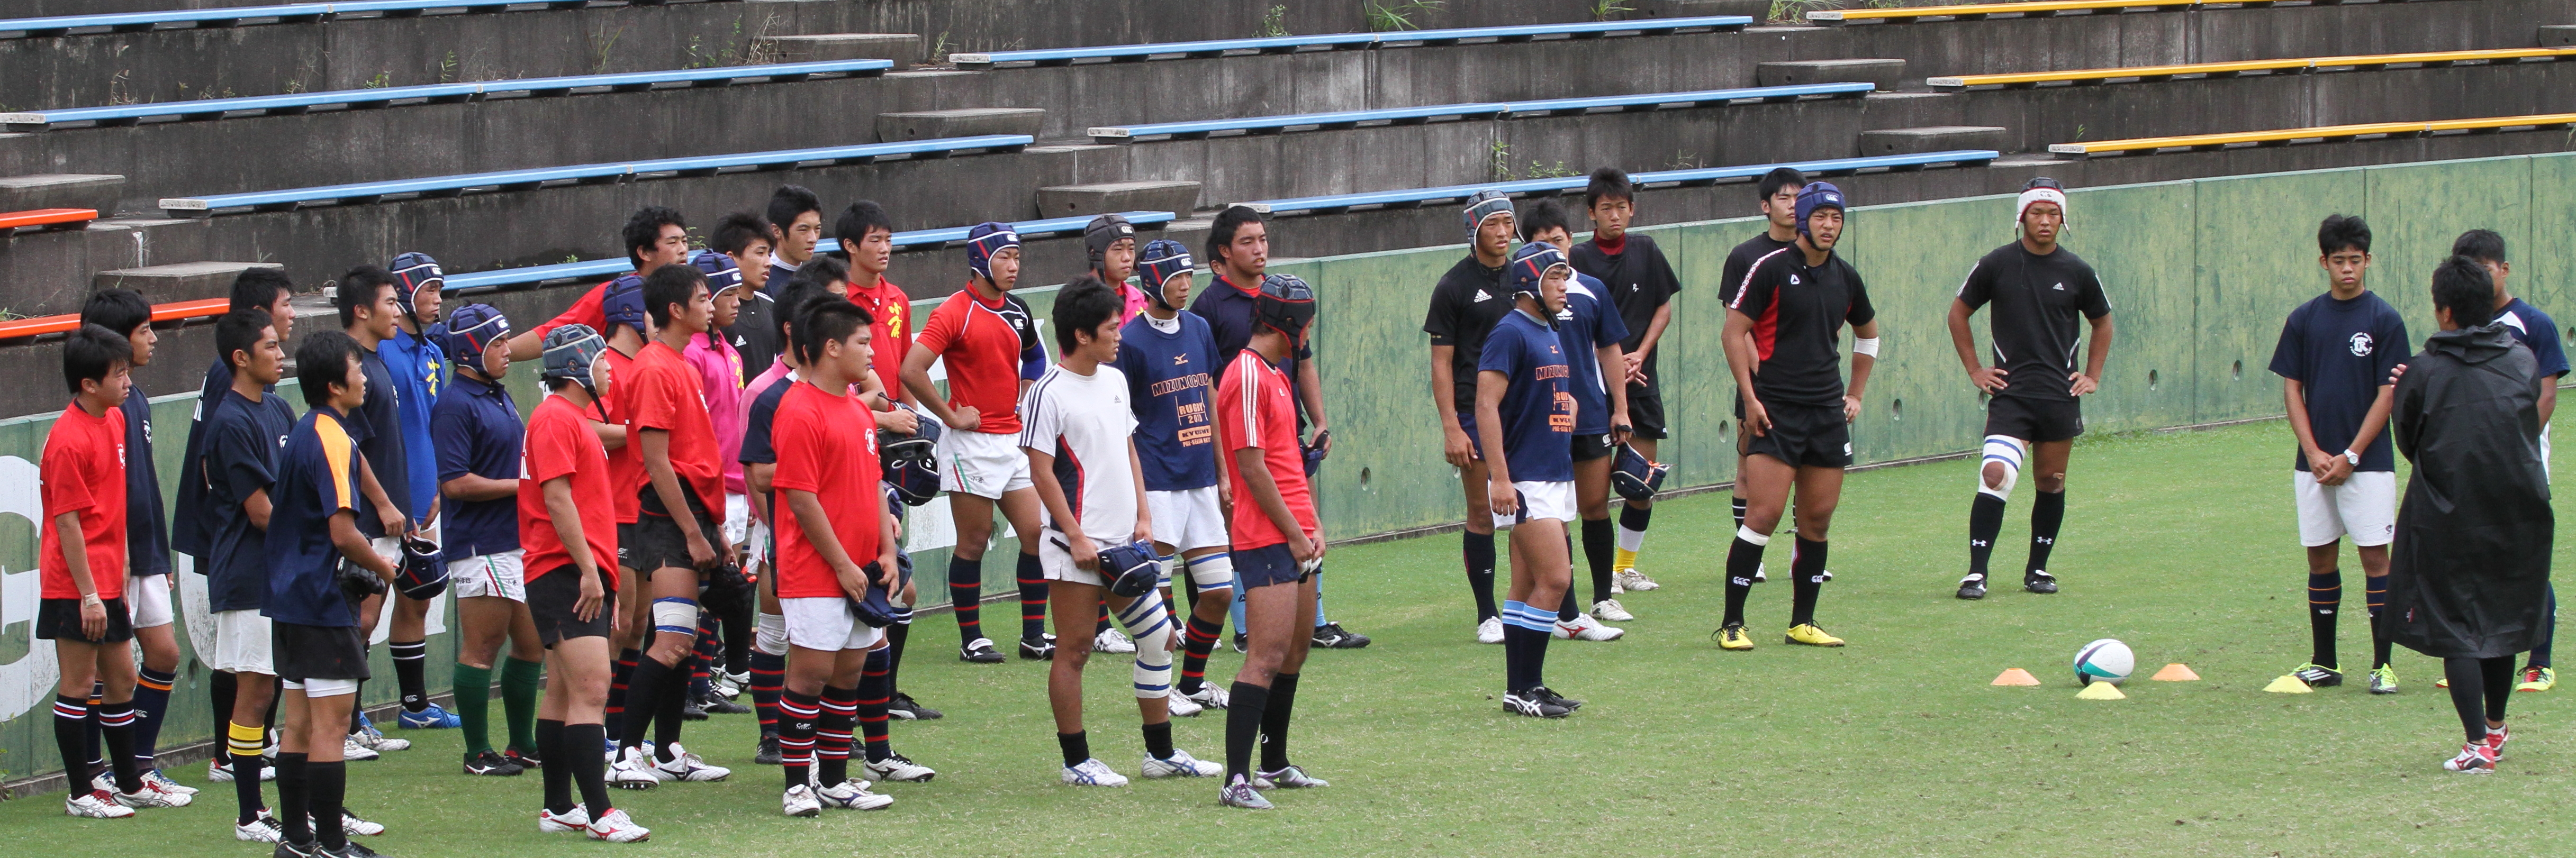 http://kokura-rugby.sakura.ne.jp/2011.9.19-1A.JPG